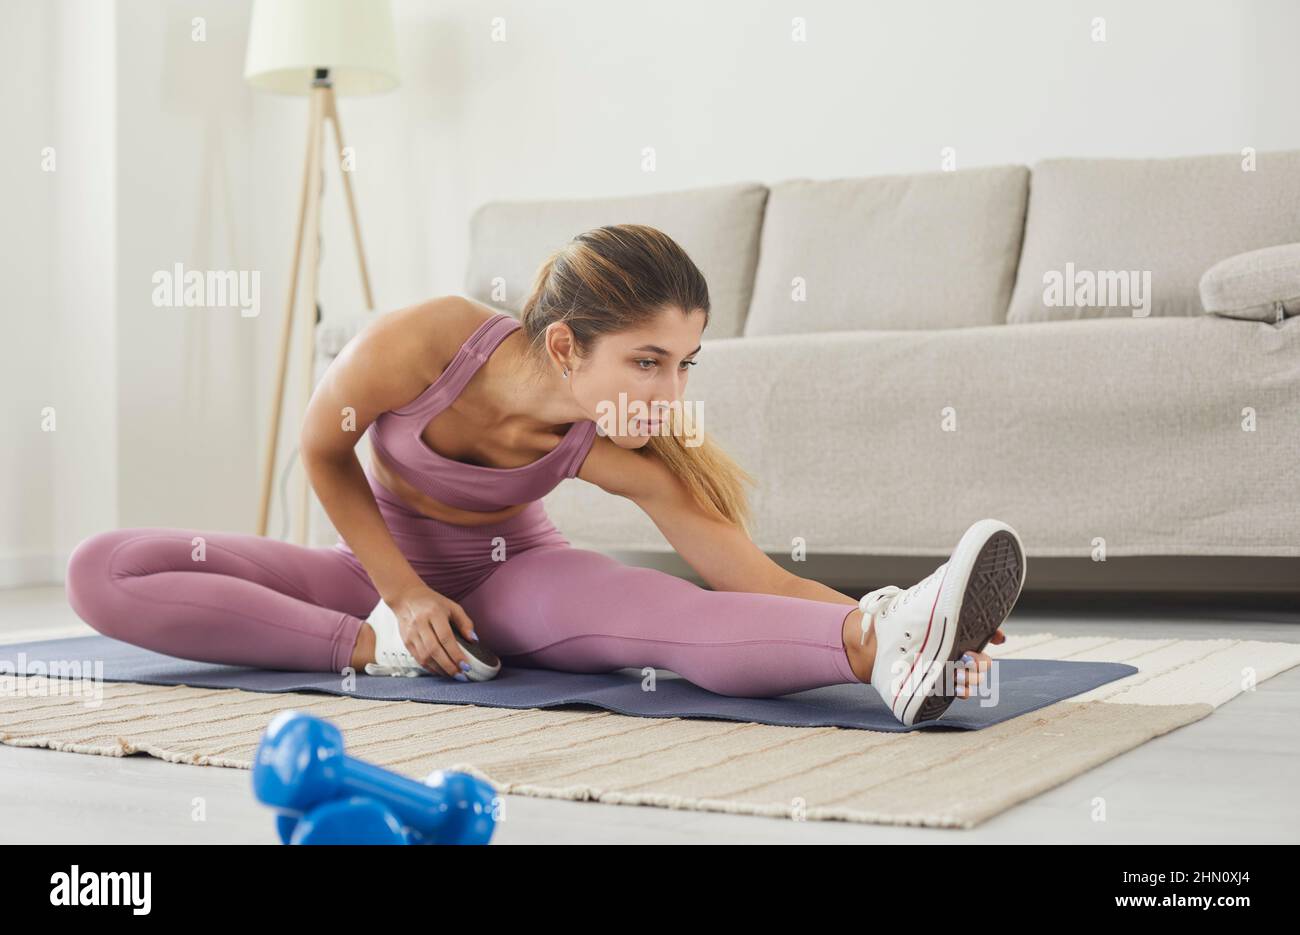 Mujer con alta flexibilidad corporal estirando su pierna para calentarse haciendo ejercicios aeróbicos de gimnasia. Foto de stock